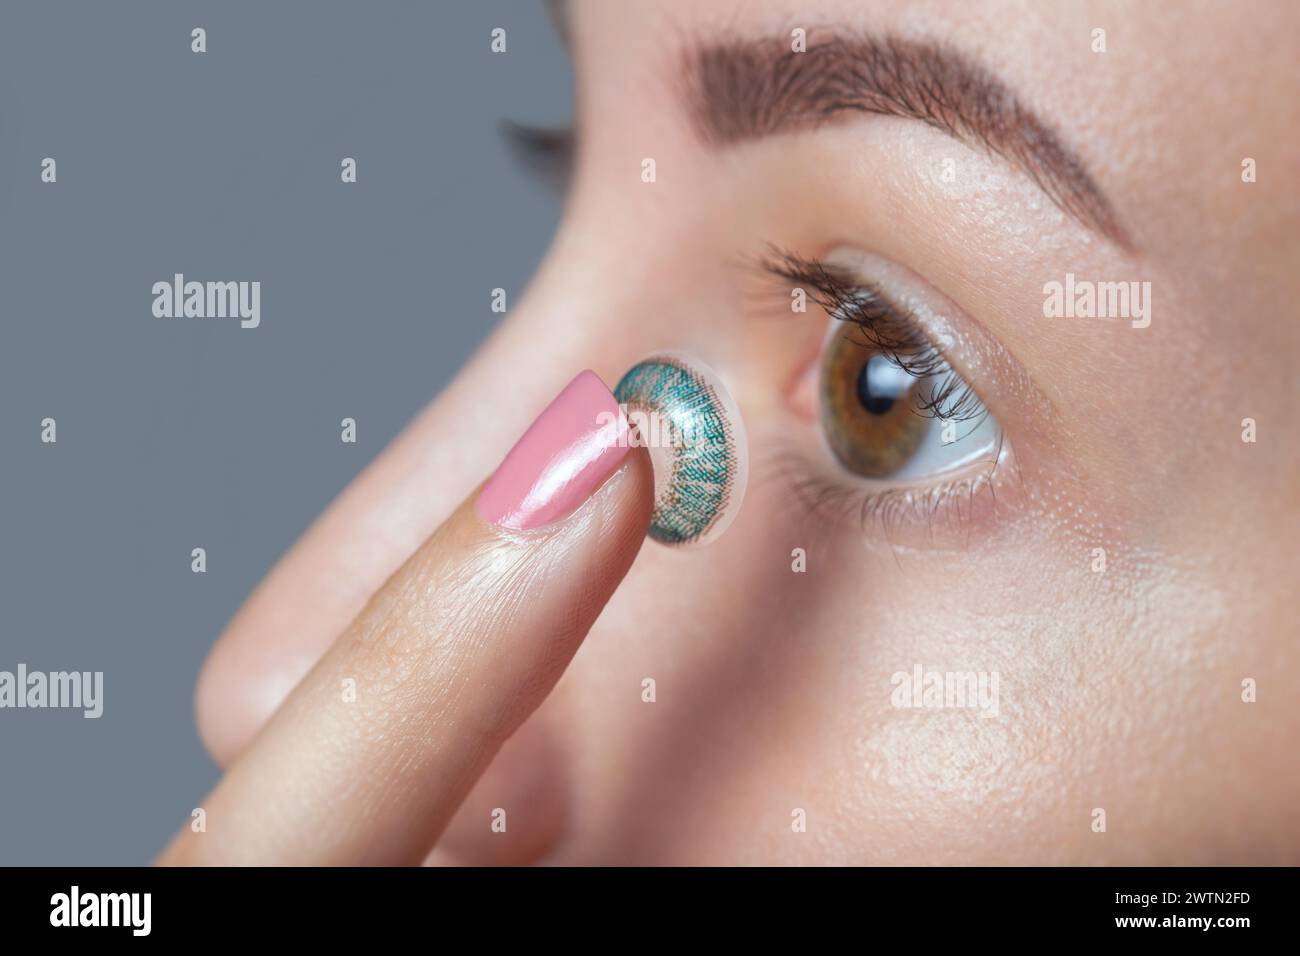 una donna tiene una lente a contatto blu al dito. Cura degli occhi e scelta tra i mezzi per migliorare la vista. Foto Stock